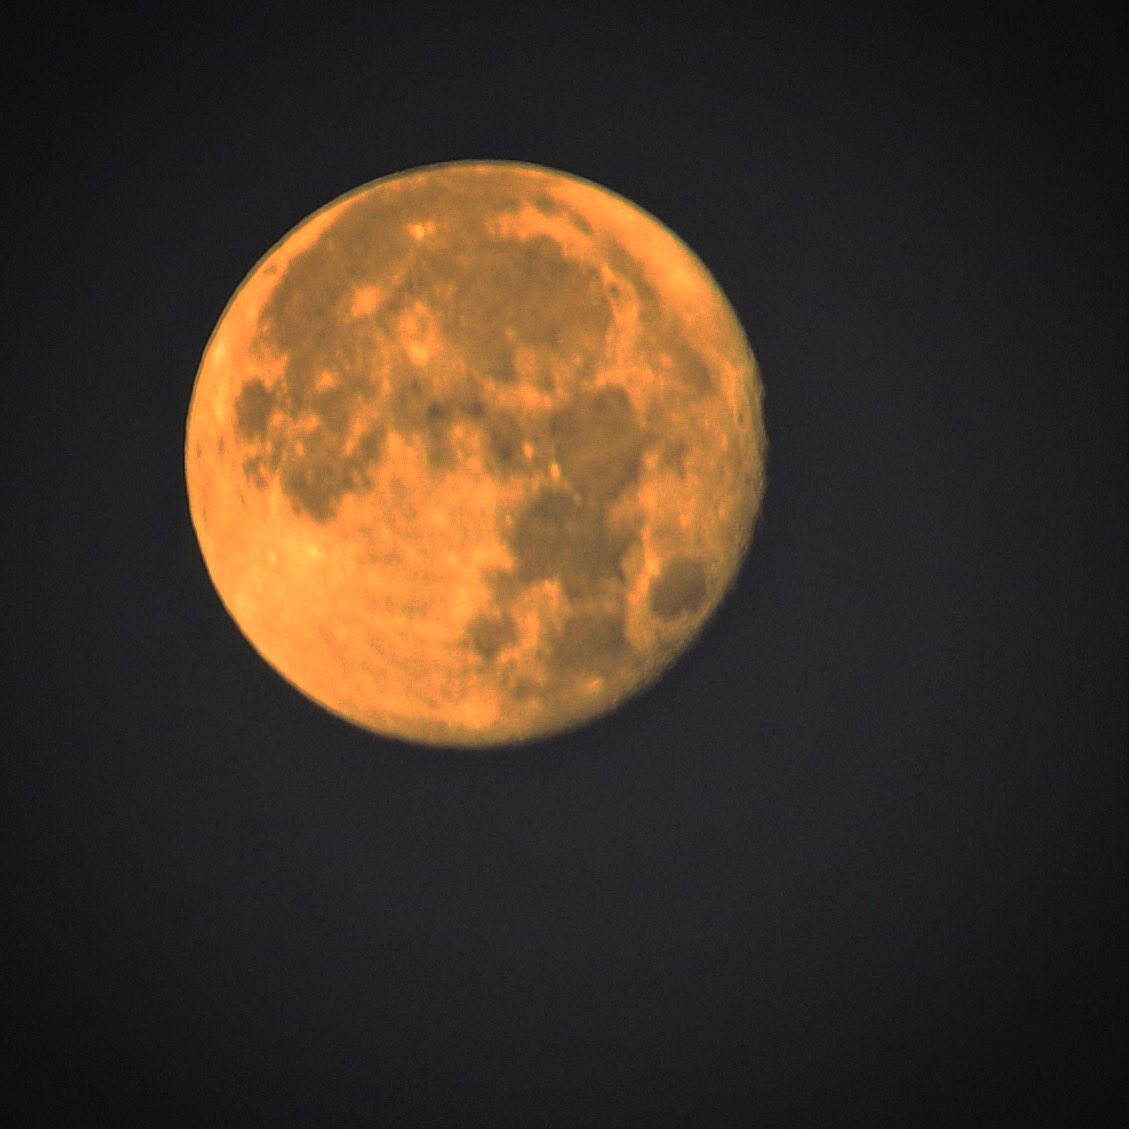 Random moon sightings  #fullmoon #photography #nikon  #moon #adayinthelifeofarealtor